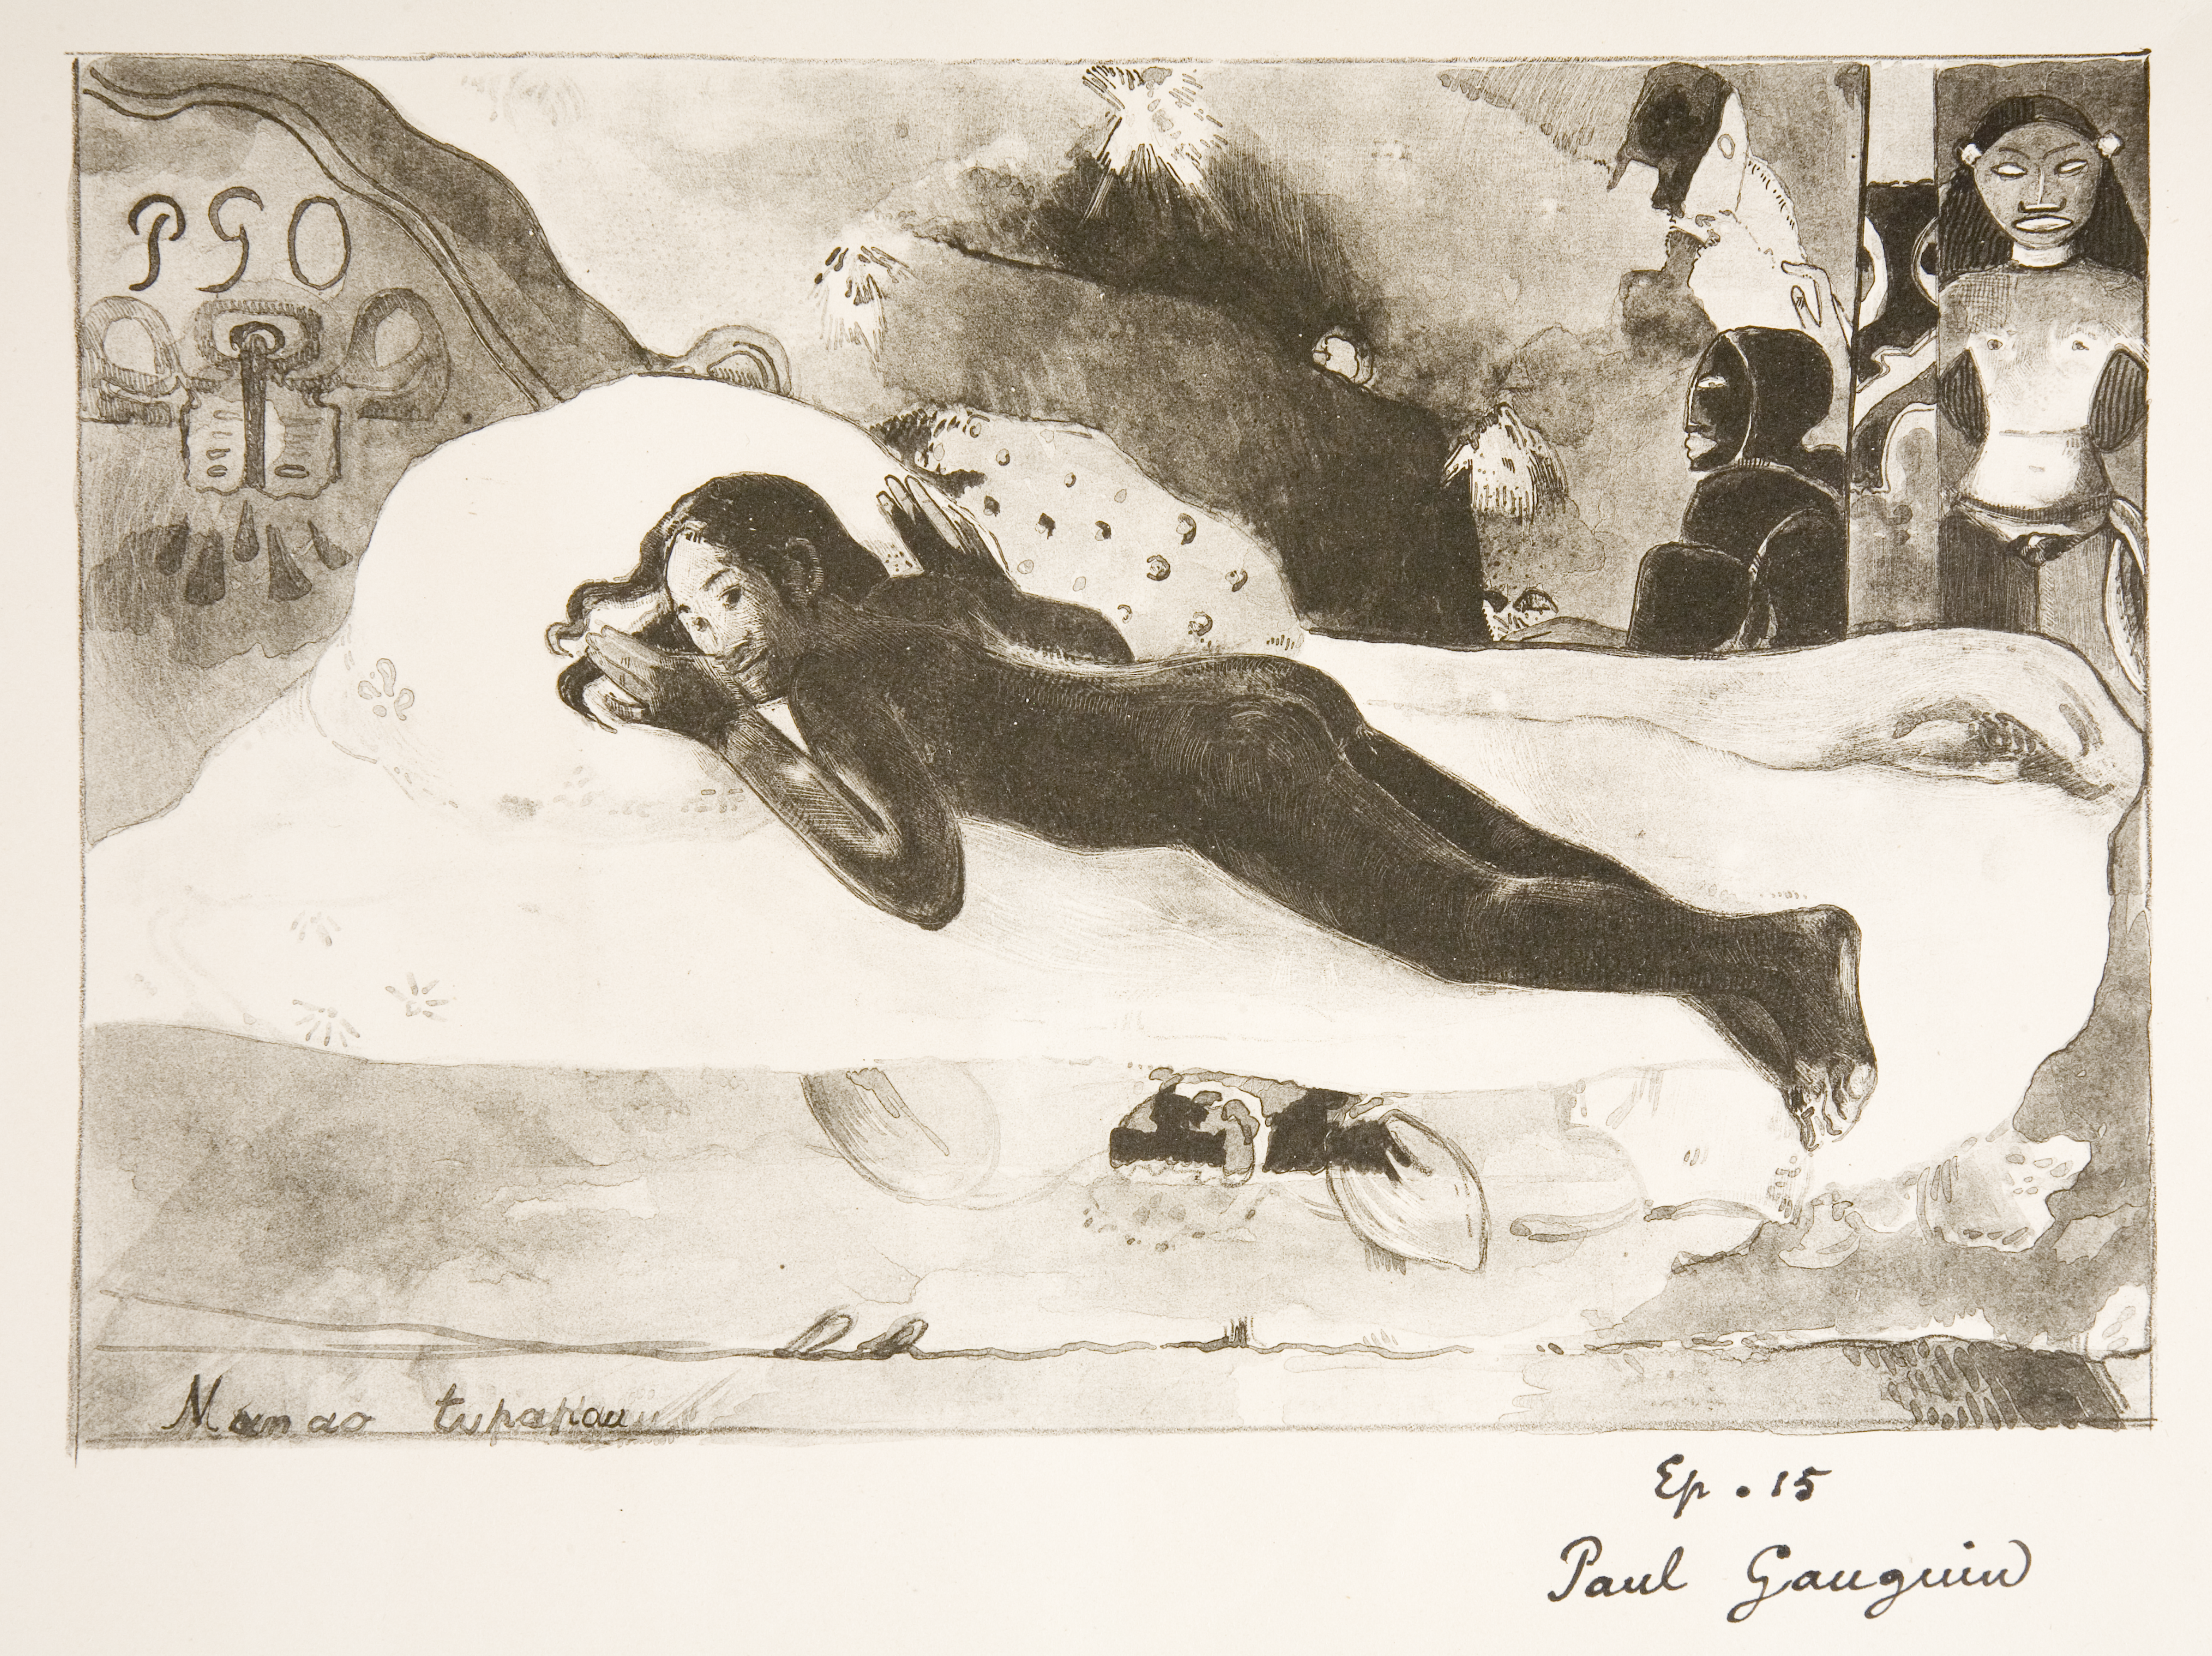 Manao Tupapau (Συλλογίζεται το πνεύμα - Το πνεύμα των νεκρών αγρυπνά) by Paul Gauguin - 1894 - - 